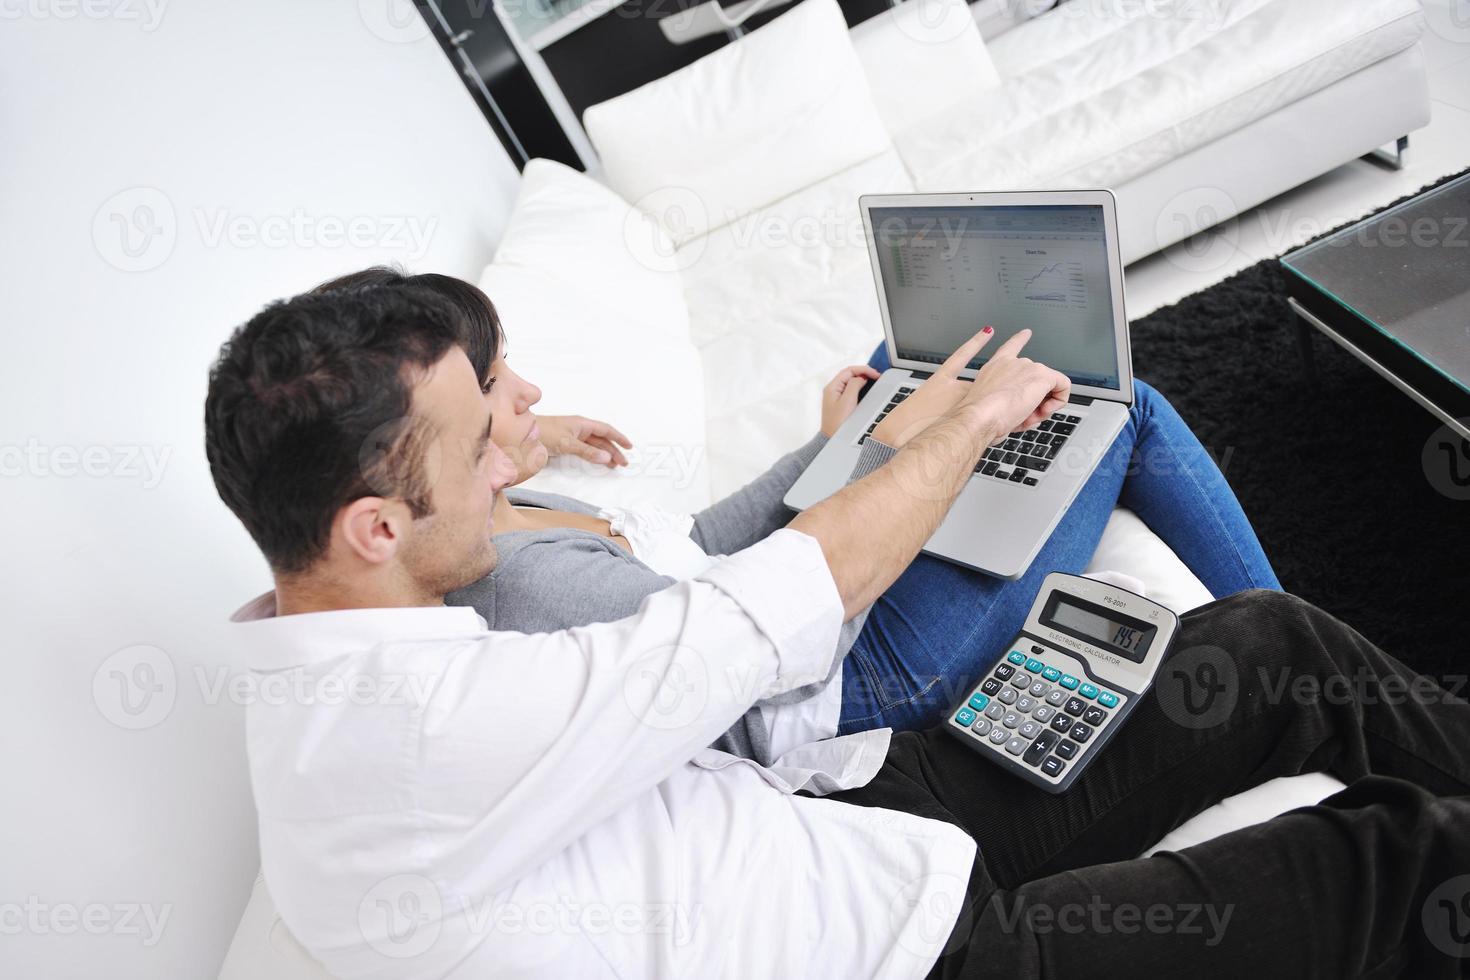 una pareja alegre se relaja y trabaja en una computadora portátil en una casa moderna foto